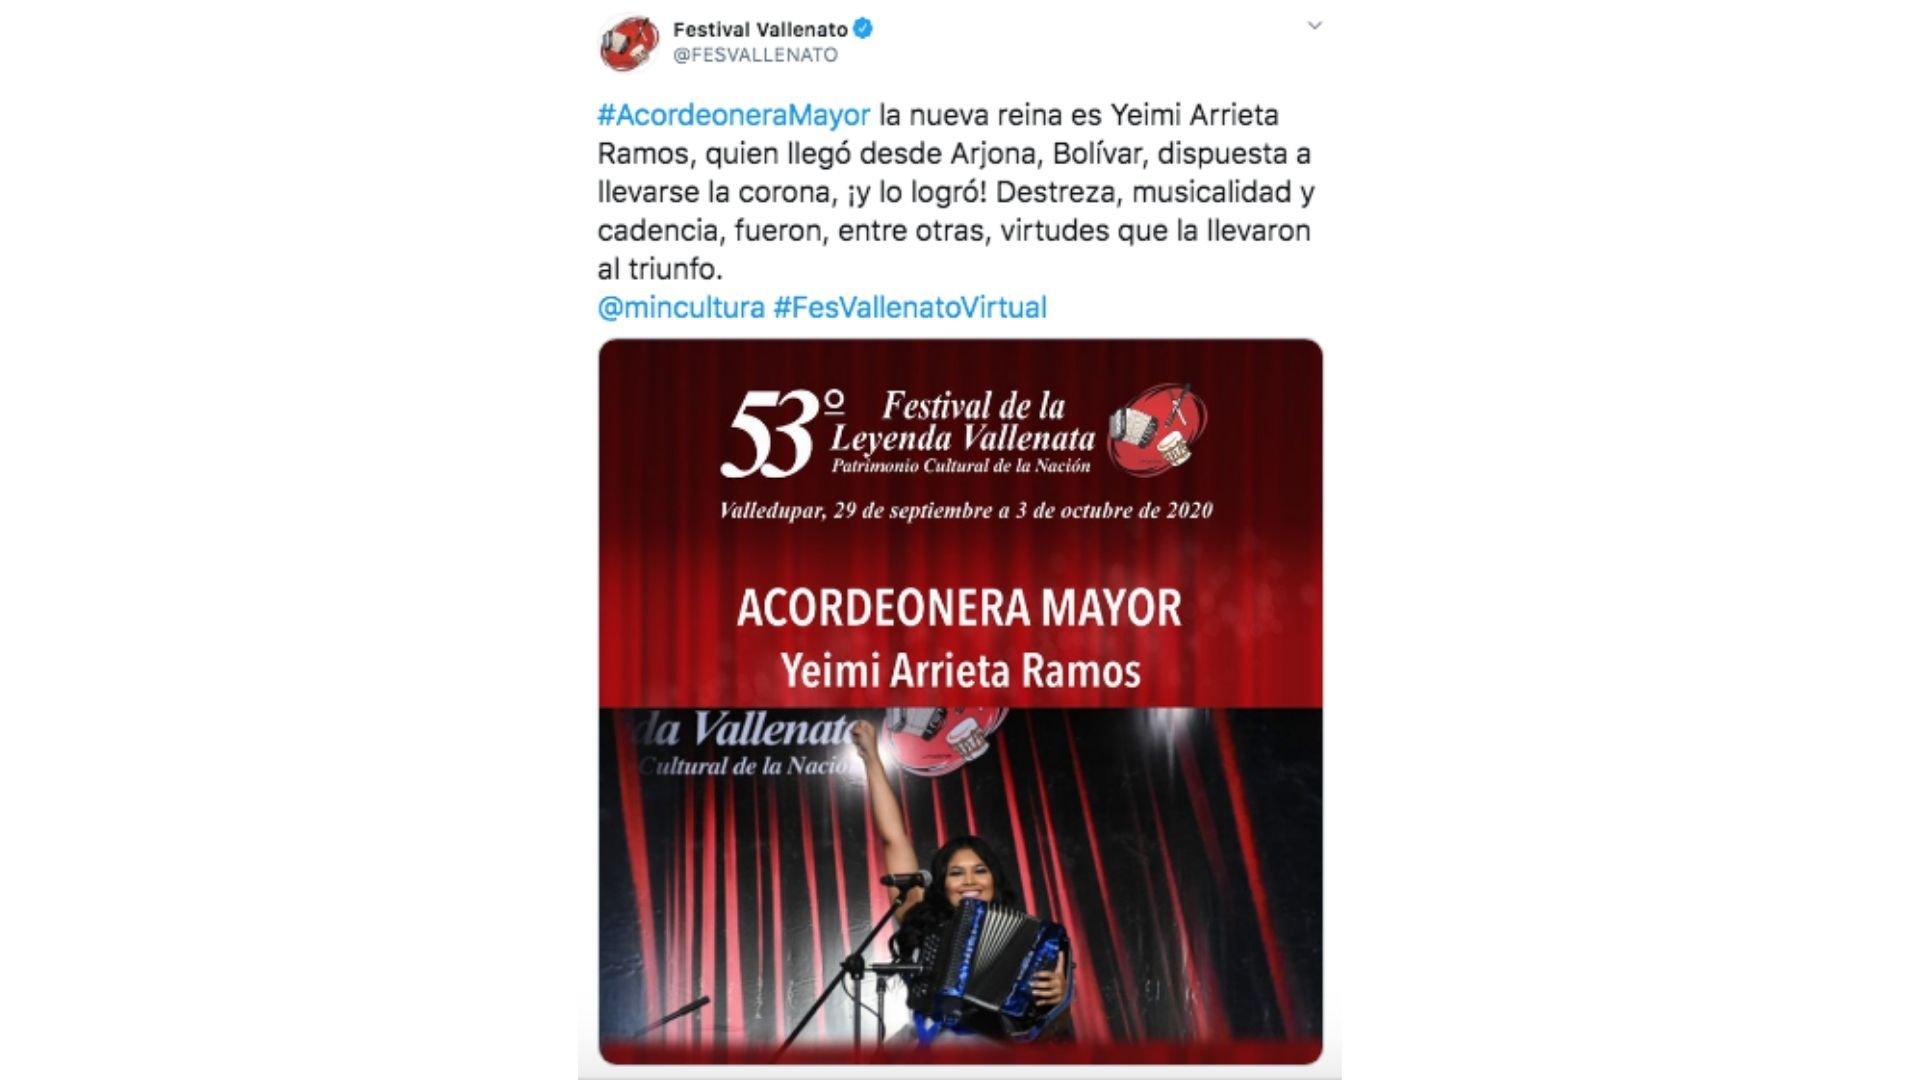 Yeimi Arrieta se llevó el título Acordeonera Mayo con el que se reconoce a lo mejor del vallenato femenino.